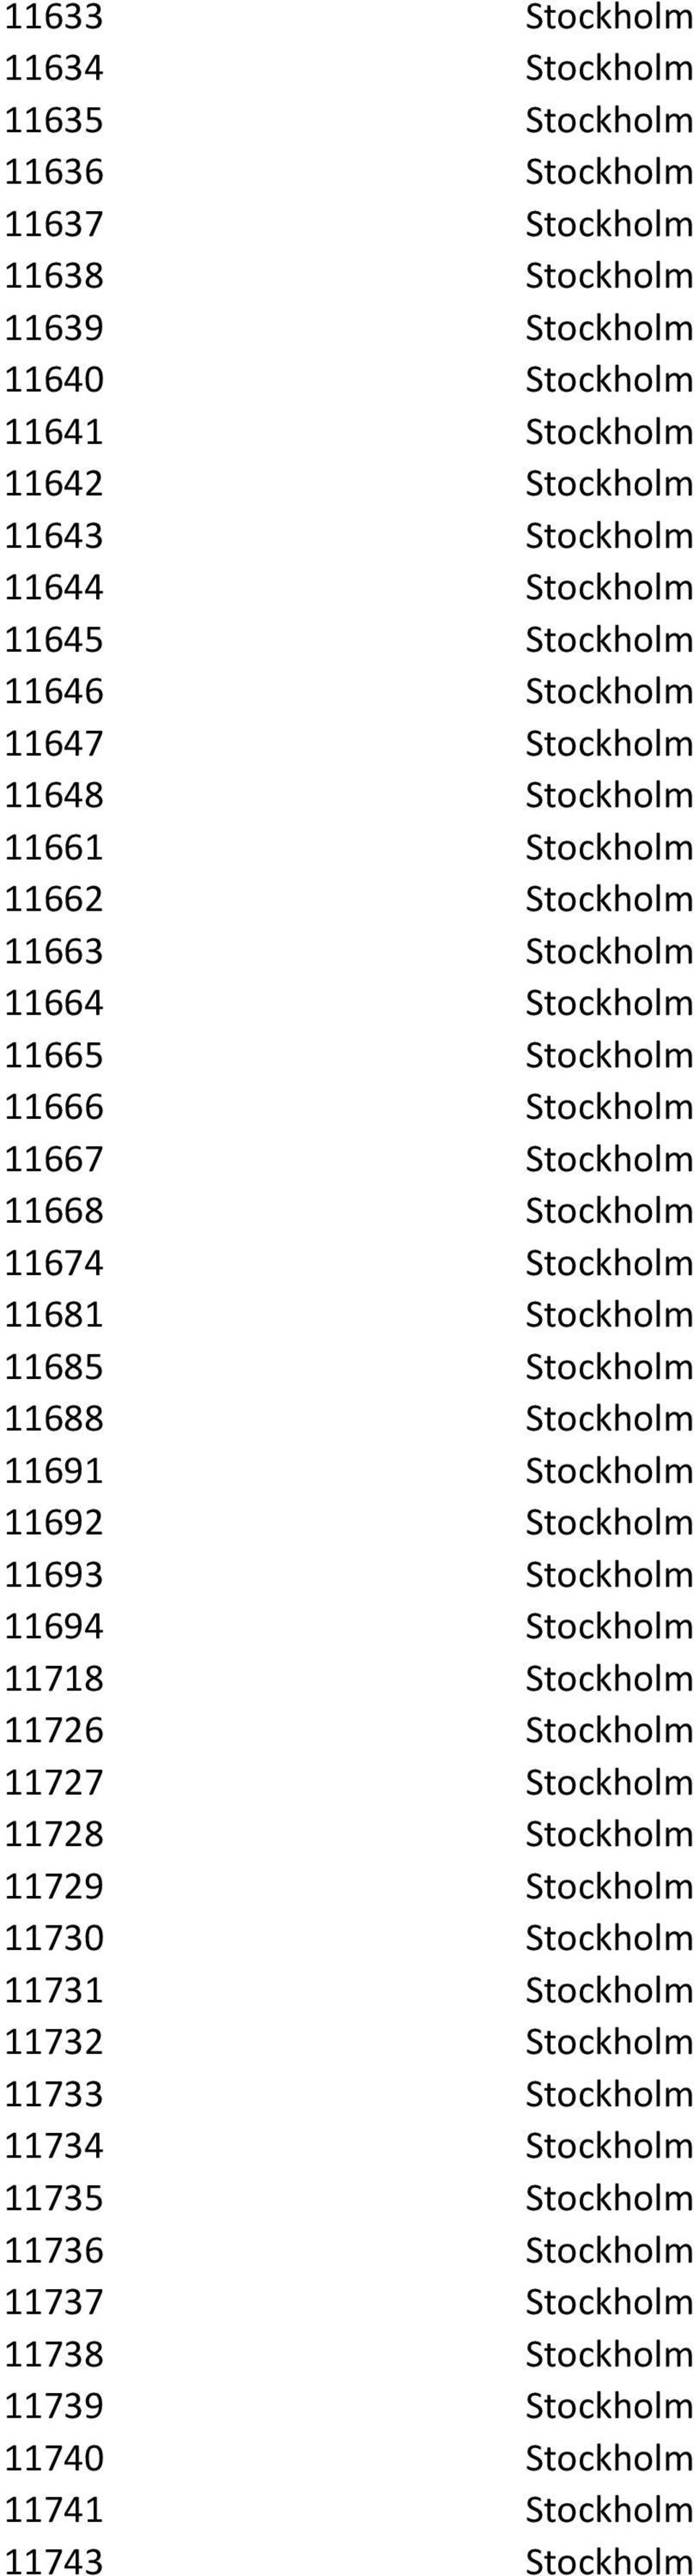 Stockholm 11681 Stockholm 11685 Stockholm 11688 Stockholm 11691 Stockholm 11692 Stockholm 11693 Stockholm 11694 Stockholm 11718 Stockholm 11726 Stockholm 11727 Stockholm 11728 Stockholm 11729